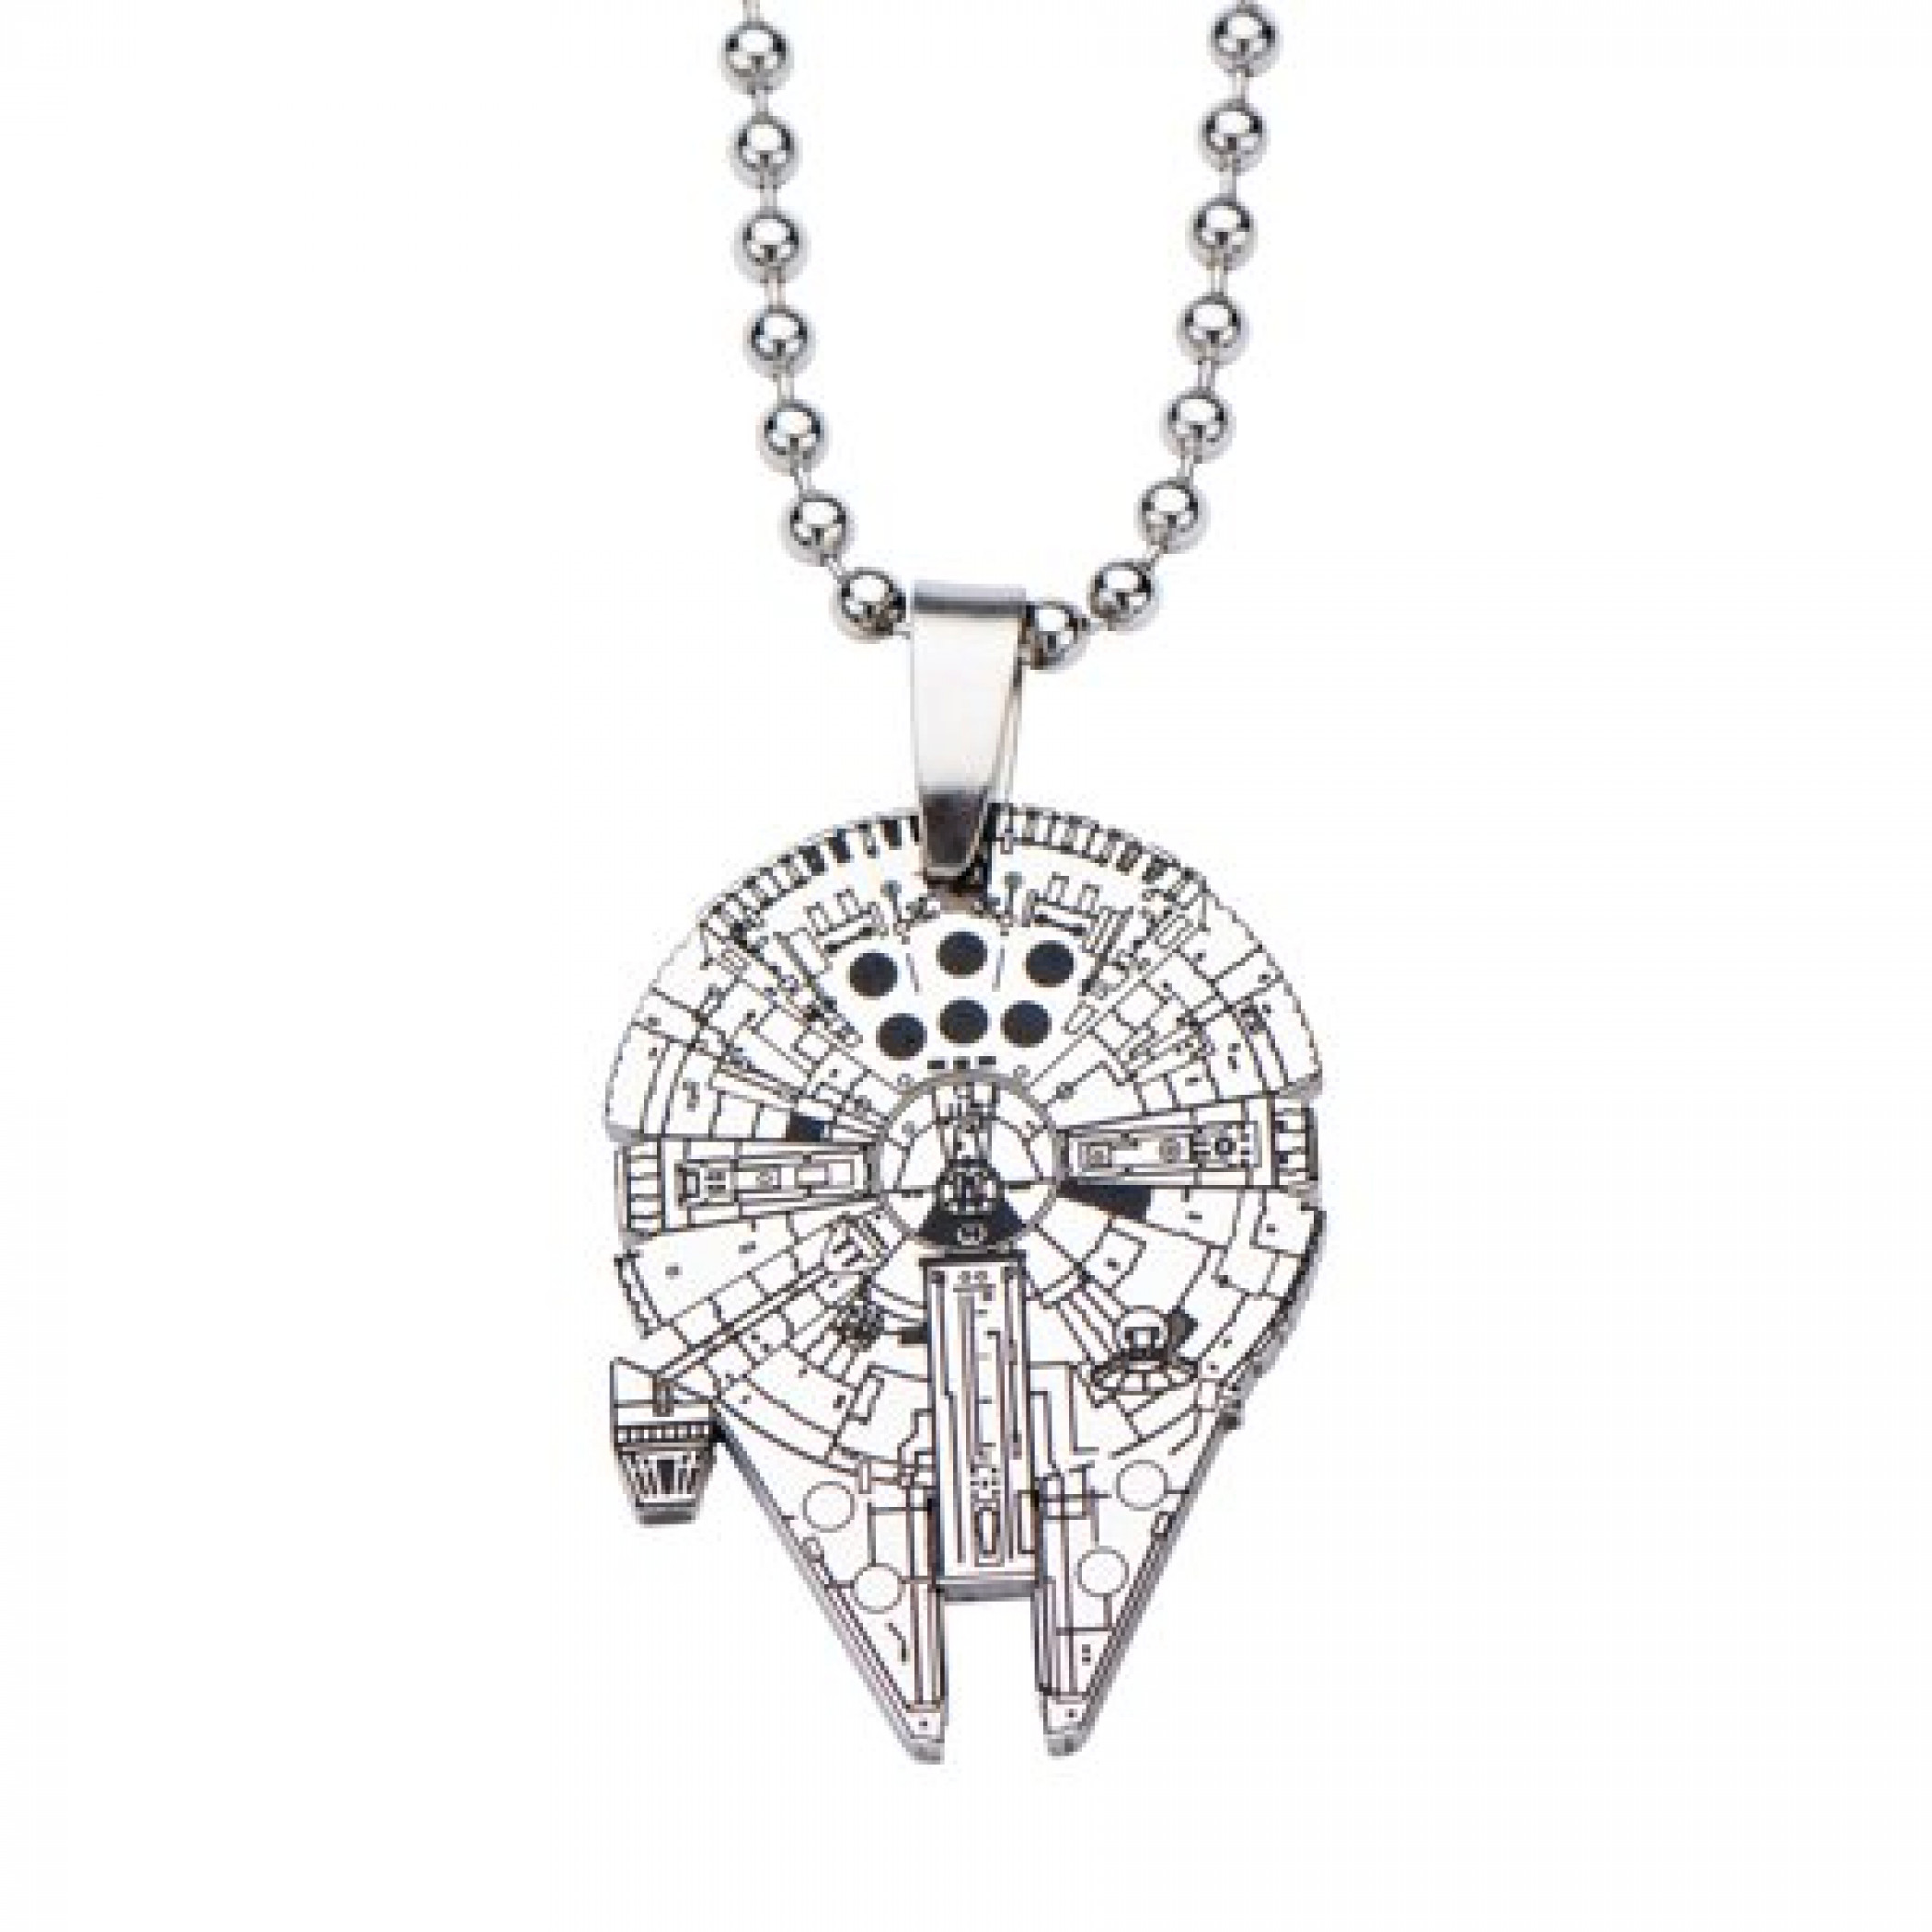 Gun Black Colour Star Wars Millennium Falcon Pendant with Necklace Chain Drk P07